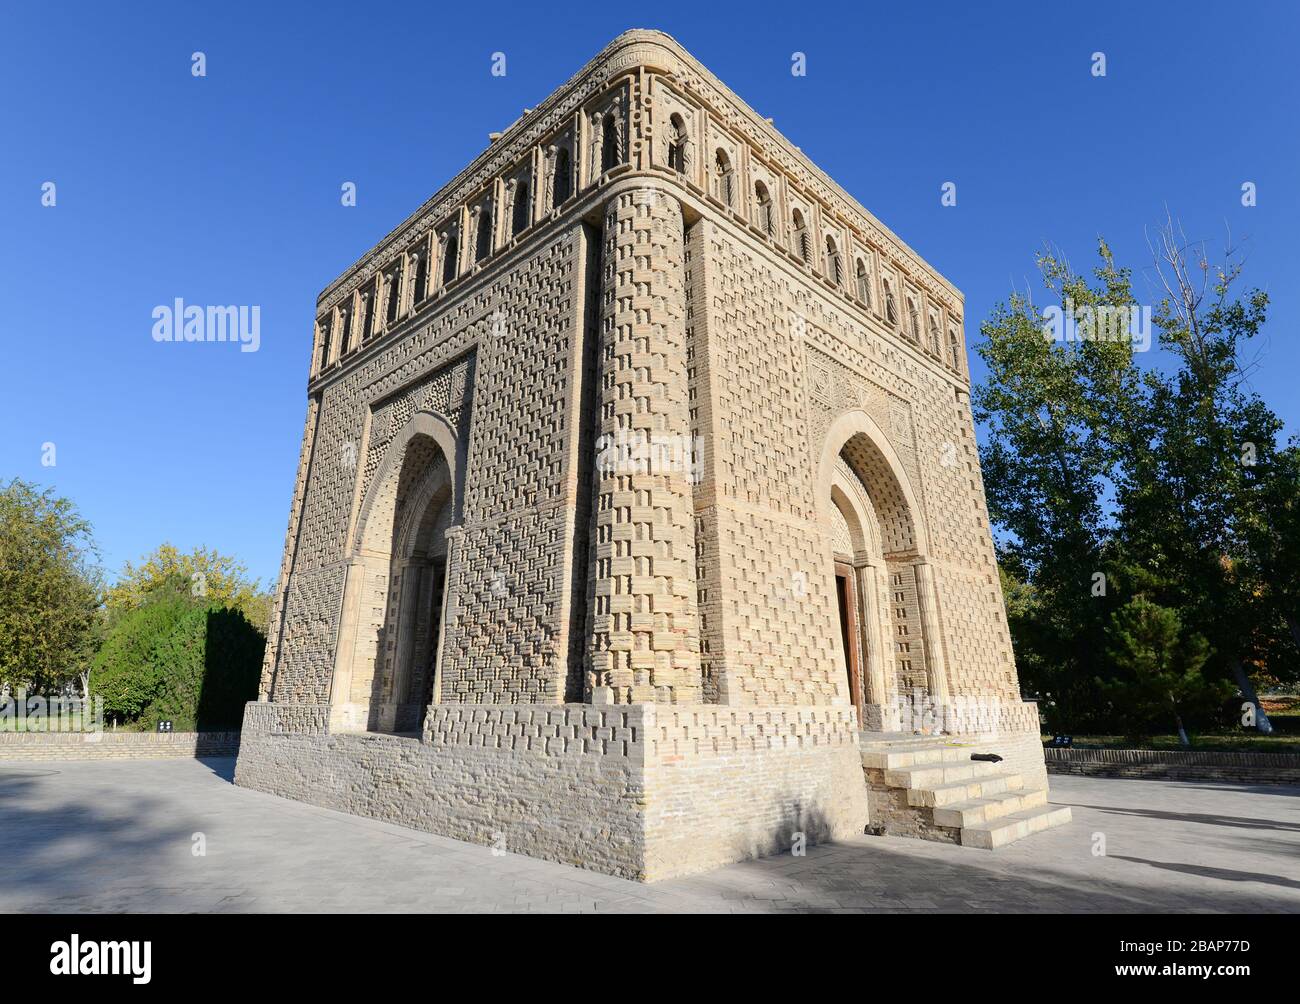 Vista diagonal del mausoleo de Samanid en Bujara, Uzbekistán. Arquitectura islámica temprana en Asia. Estructura cuadrada construida con ladrillo / ladrillo. Foto de stock